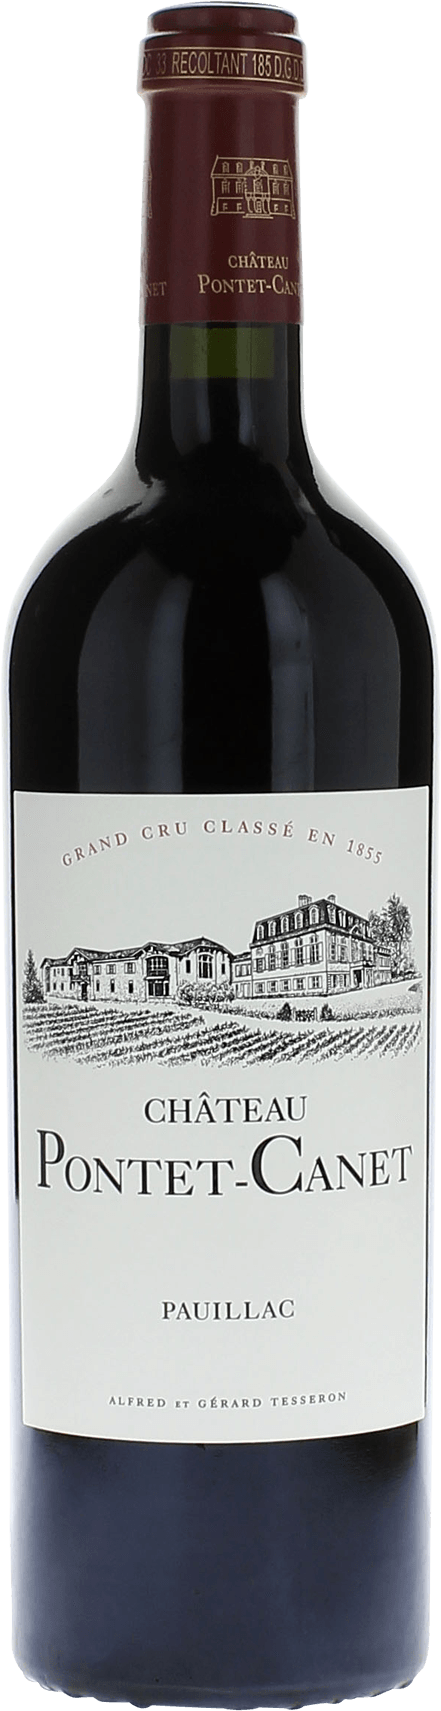 Pontet canet 1989 5me Grand cru class Pauillac, Bordeaux rouge